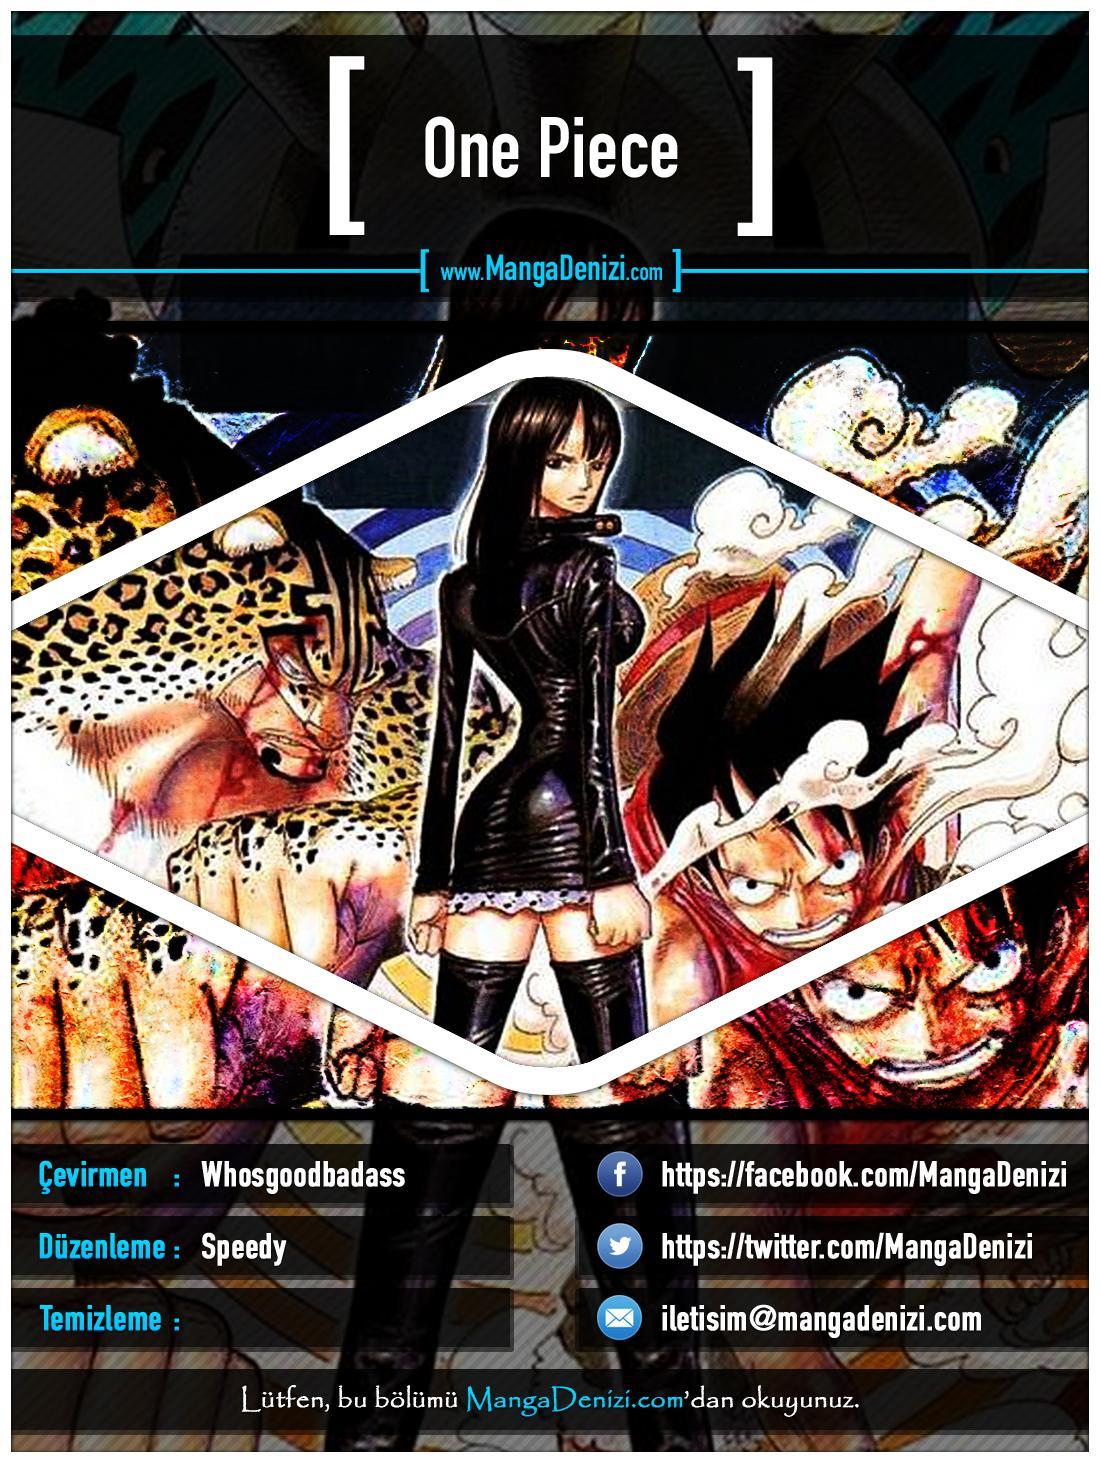 One Piece [Renkli] mangasının 0323 bölümünün 1. sayfasını okuyorsunuz.